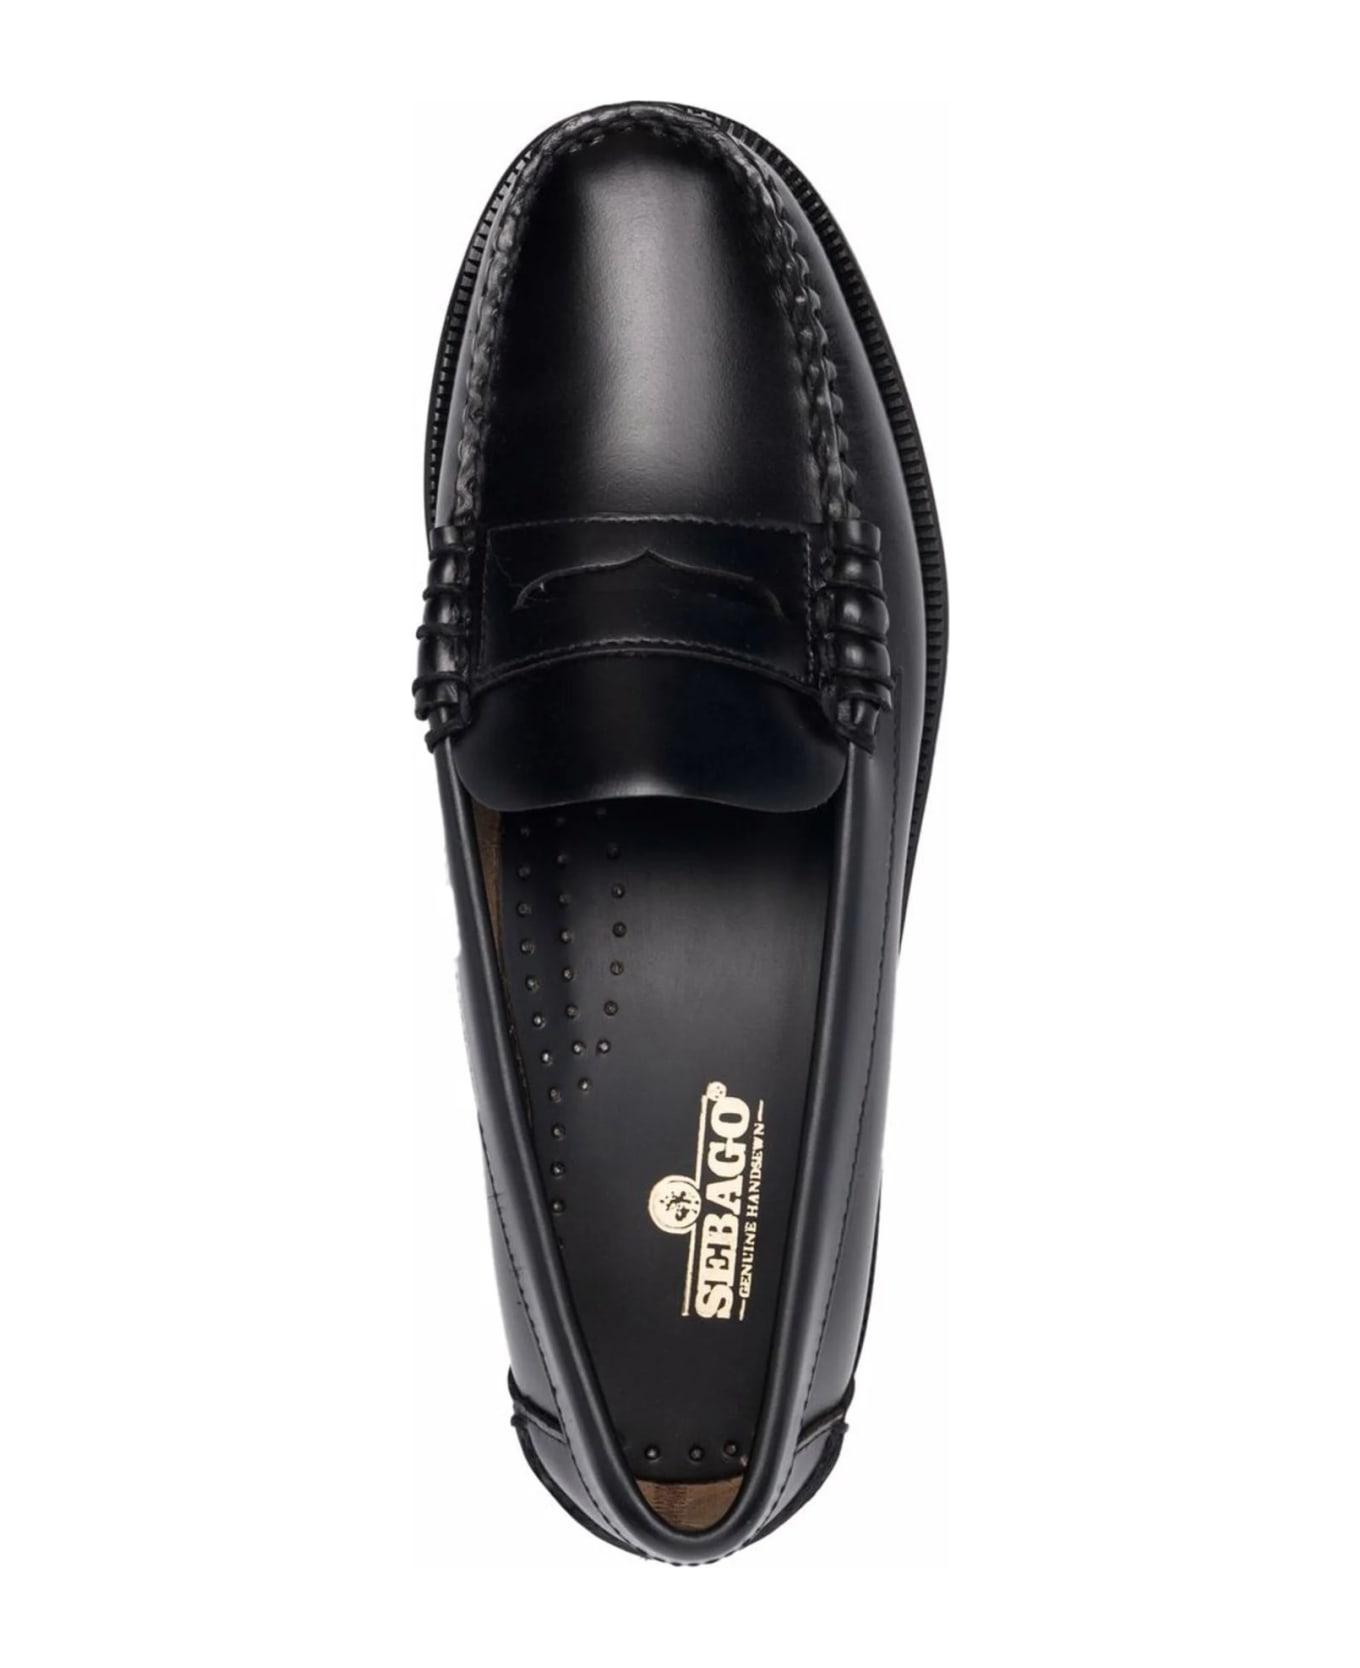 Sebago Black Leather Loafers - Black フラットシューズ